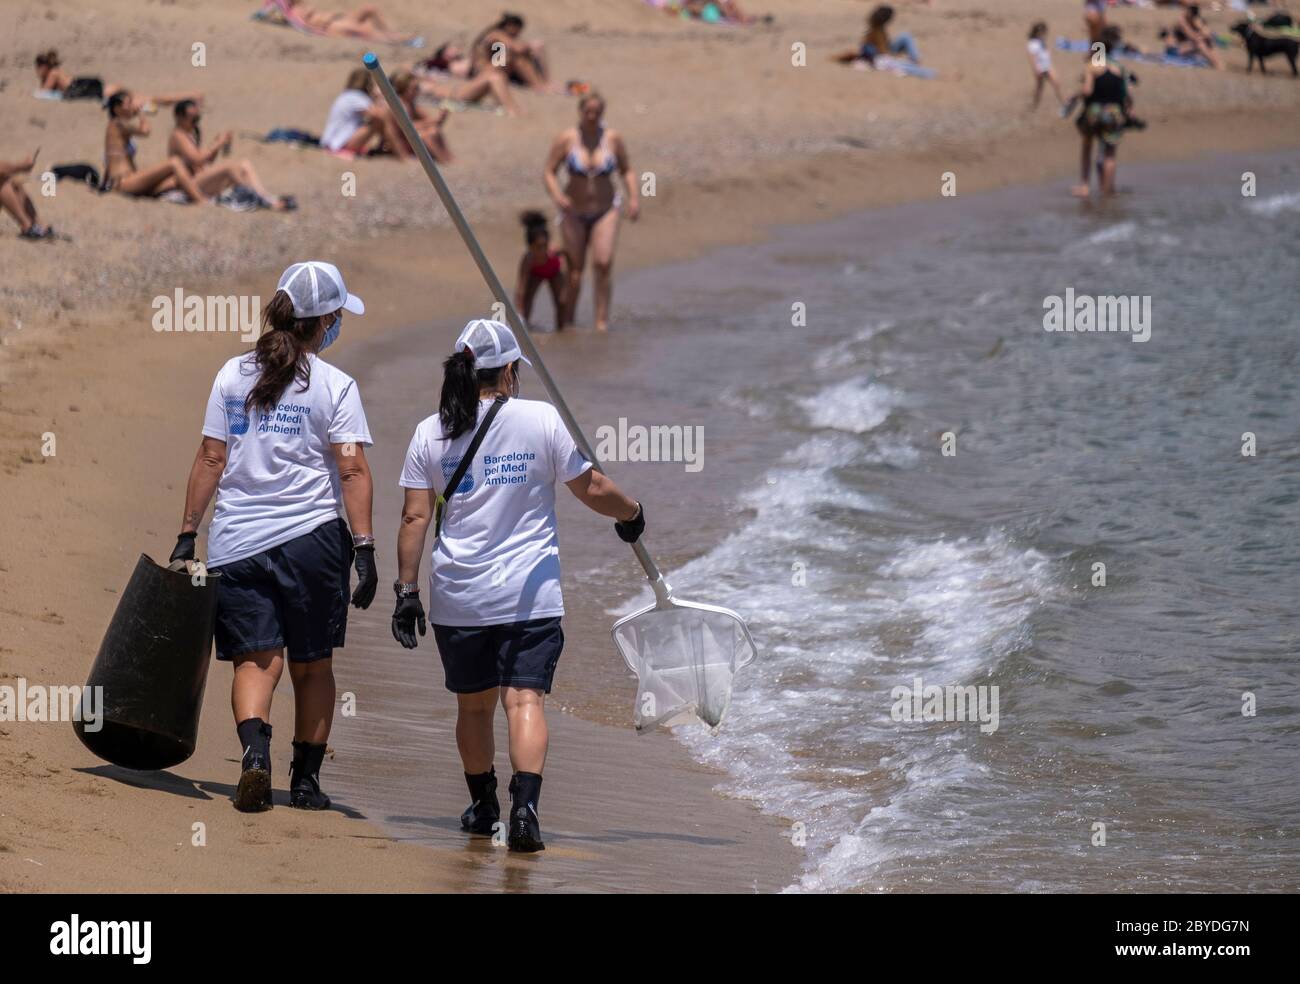 Le personnel de nettoyage de la plage du Conseil municipal de Barcelone est vu se diriger vers les eaux propres de la plage de Barceloneta. Barcelone commence la saison estivale de baignade sur les plages avec de nouvelles mesures pour contrôler la capacité et la distance sociale due à la contagion de Covid-19. Banque D'Images